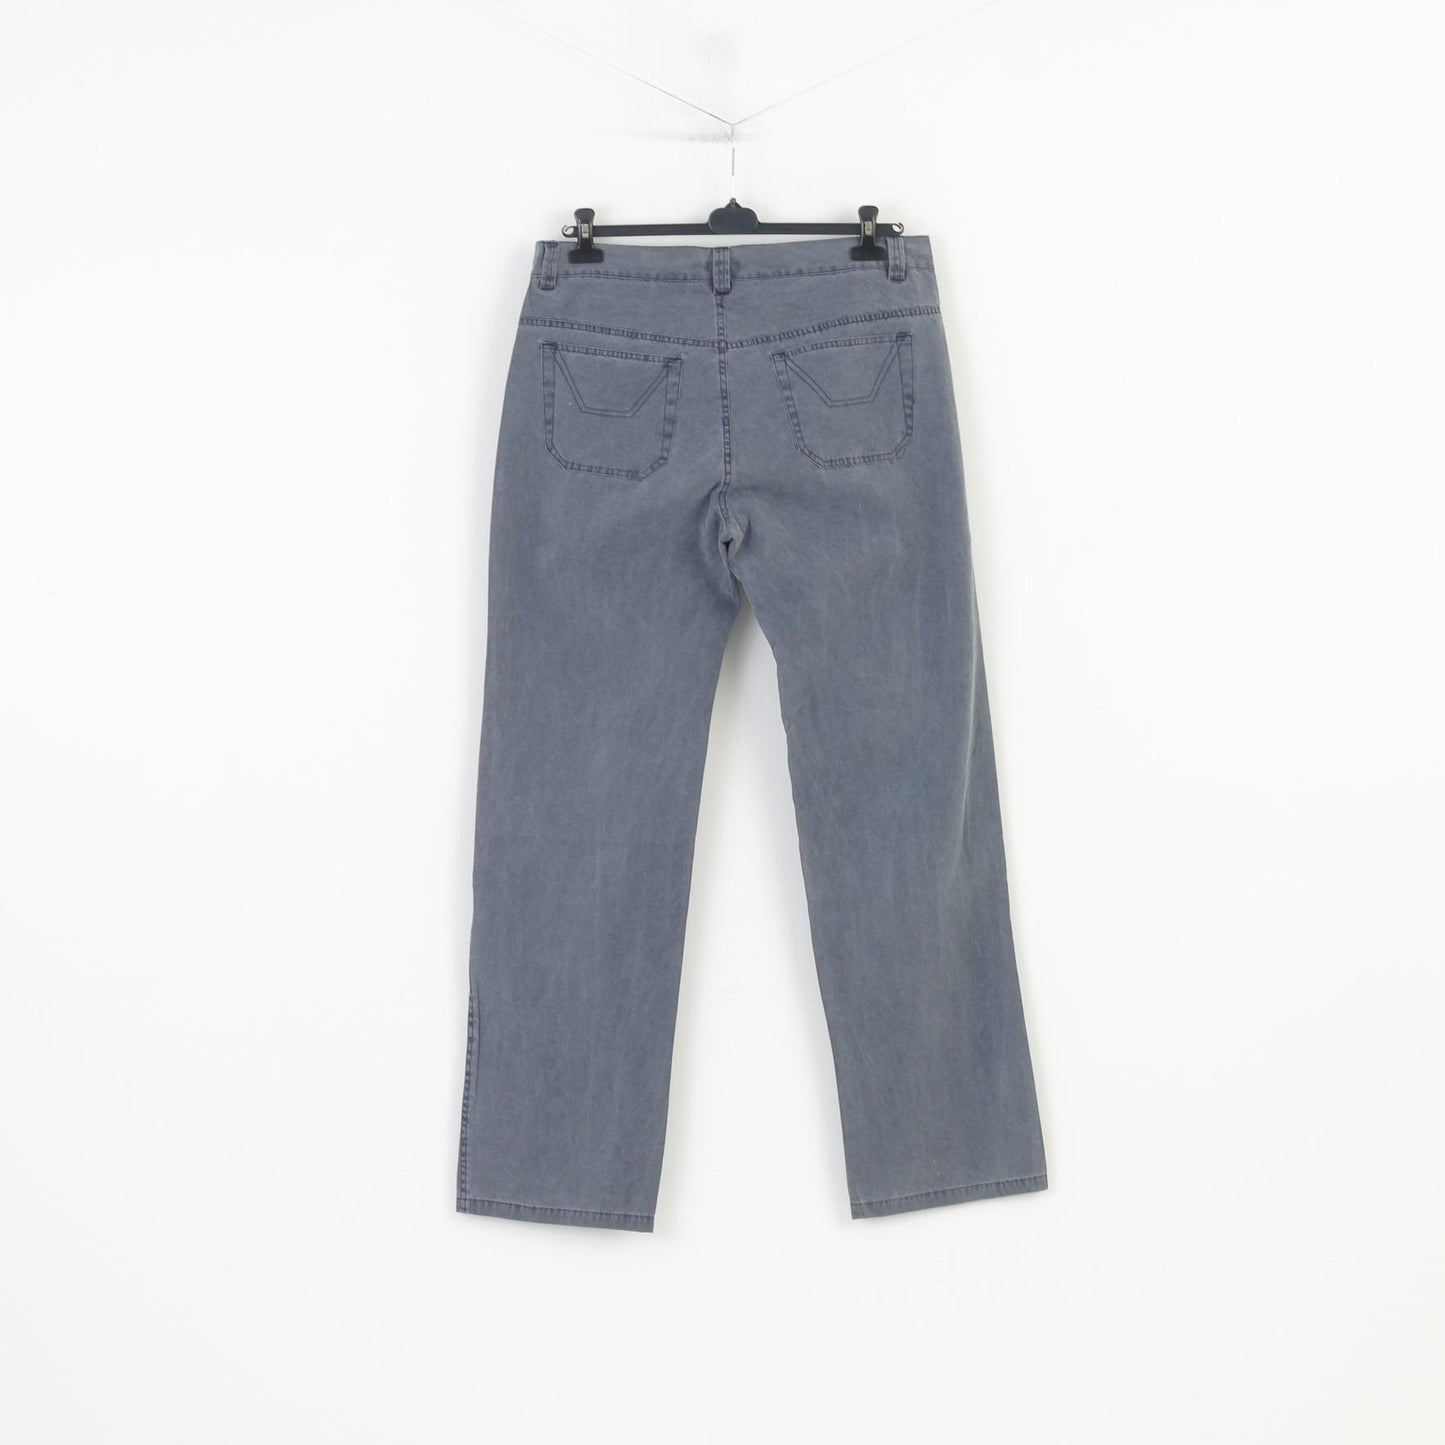 Bernardi Collection Men 54 Trousers Grey Cotton Classic Light  Jeans Vintage Pants